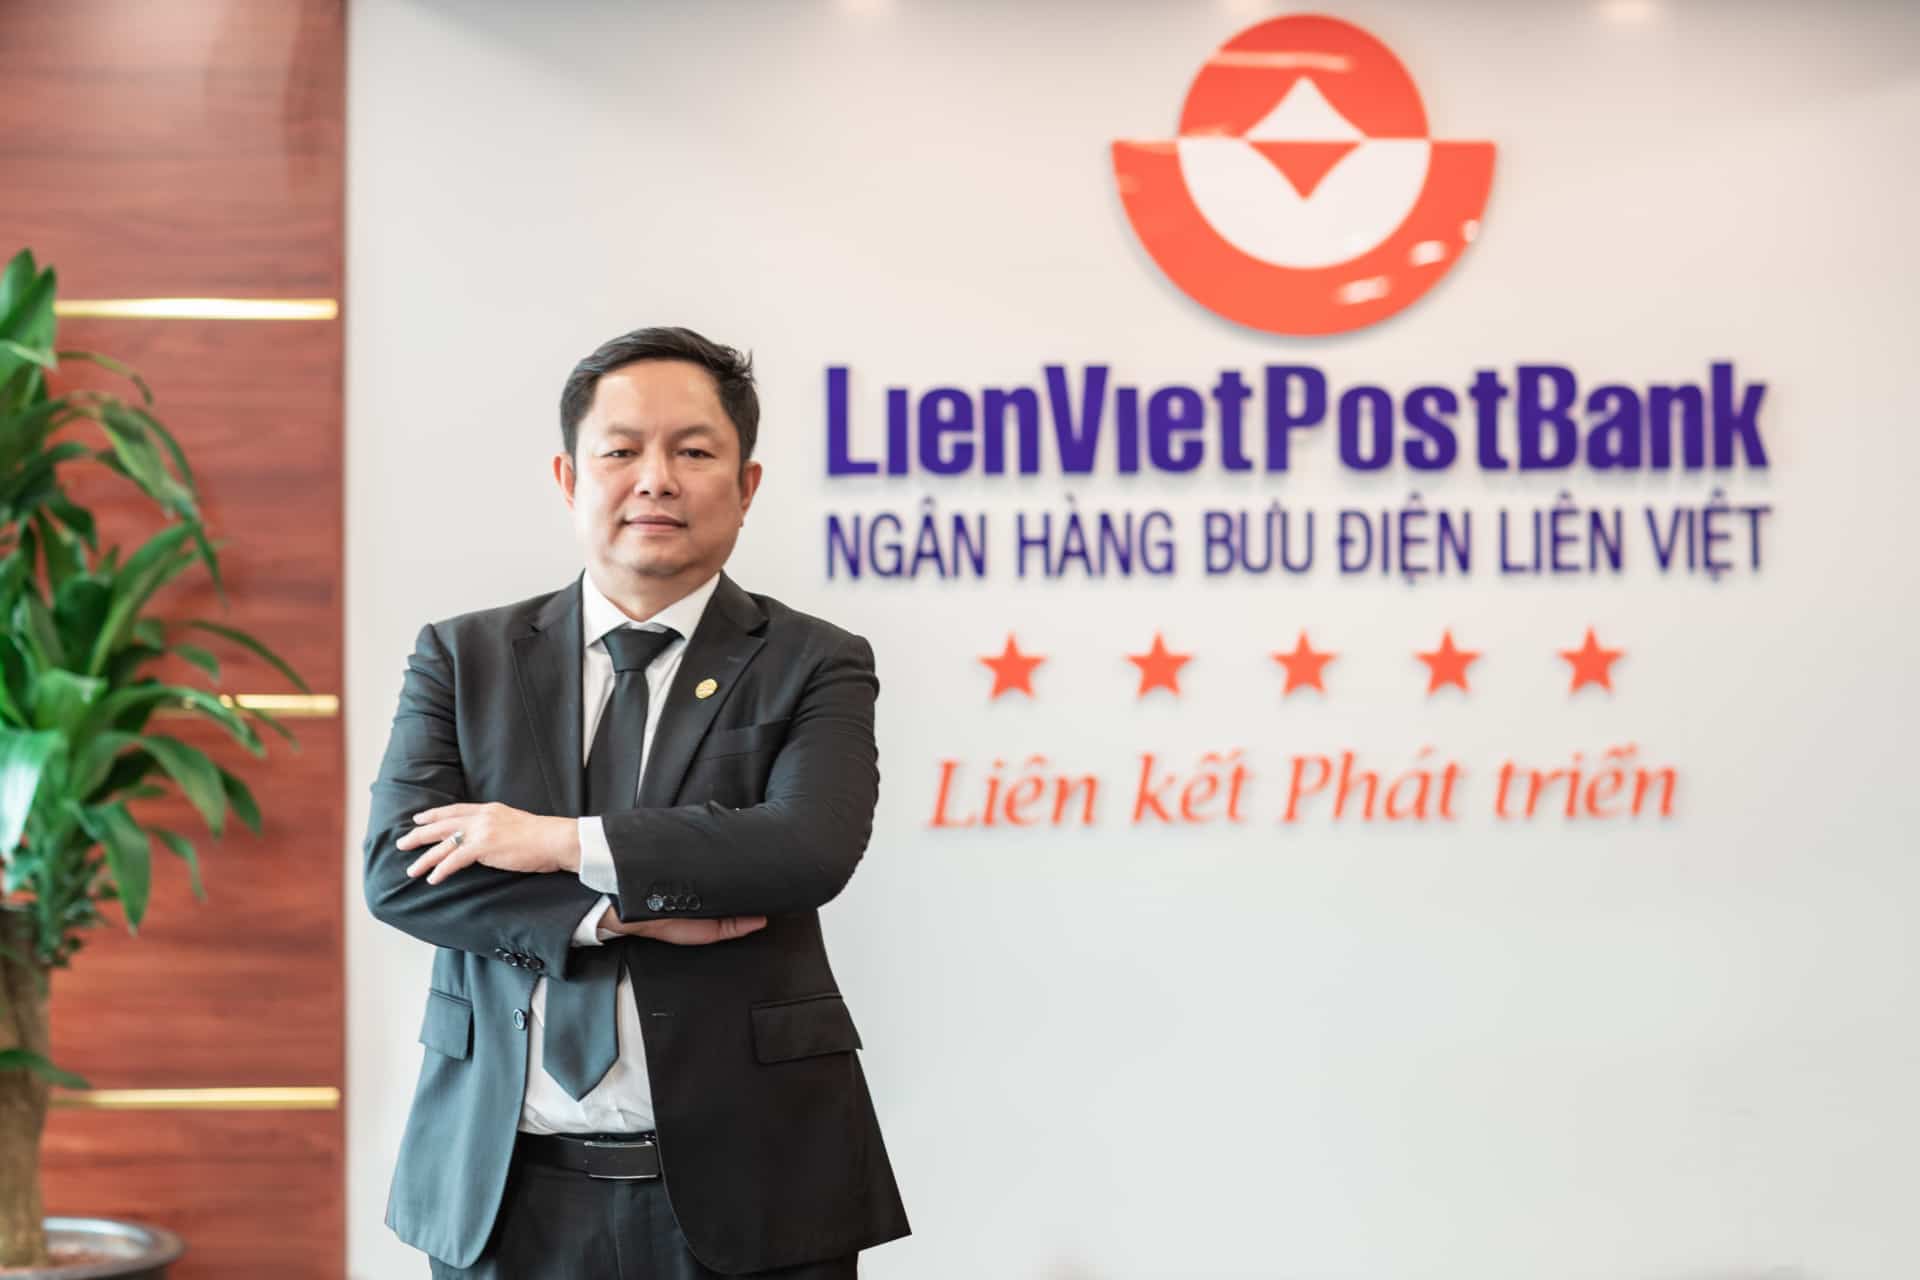 Ông Huỳnh Ngọc Huy đang đảm nhiệm vị trí Chủ tịch HĐQT Ngân hàng TMCP Bưu điện Liên Việt